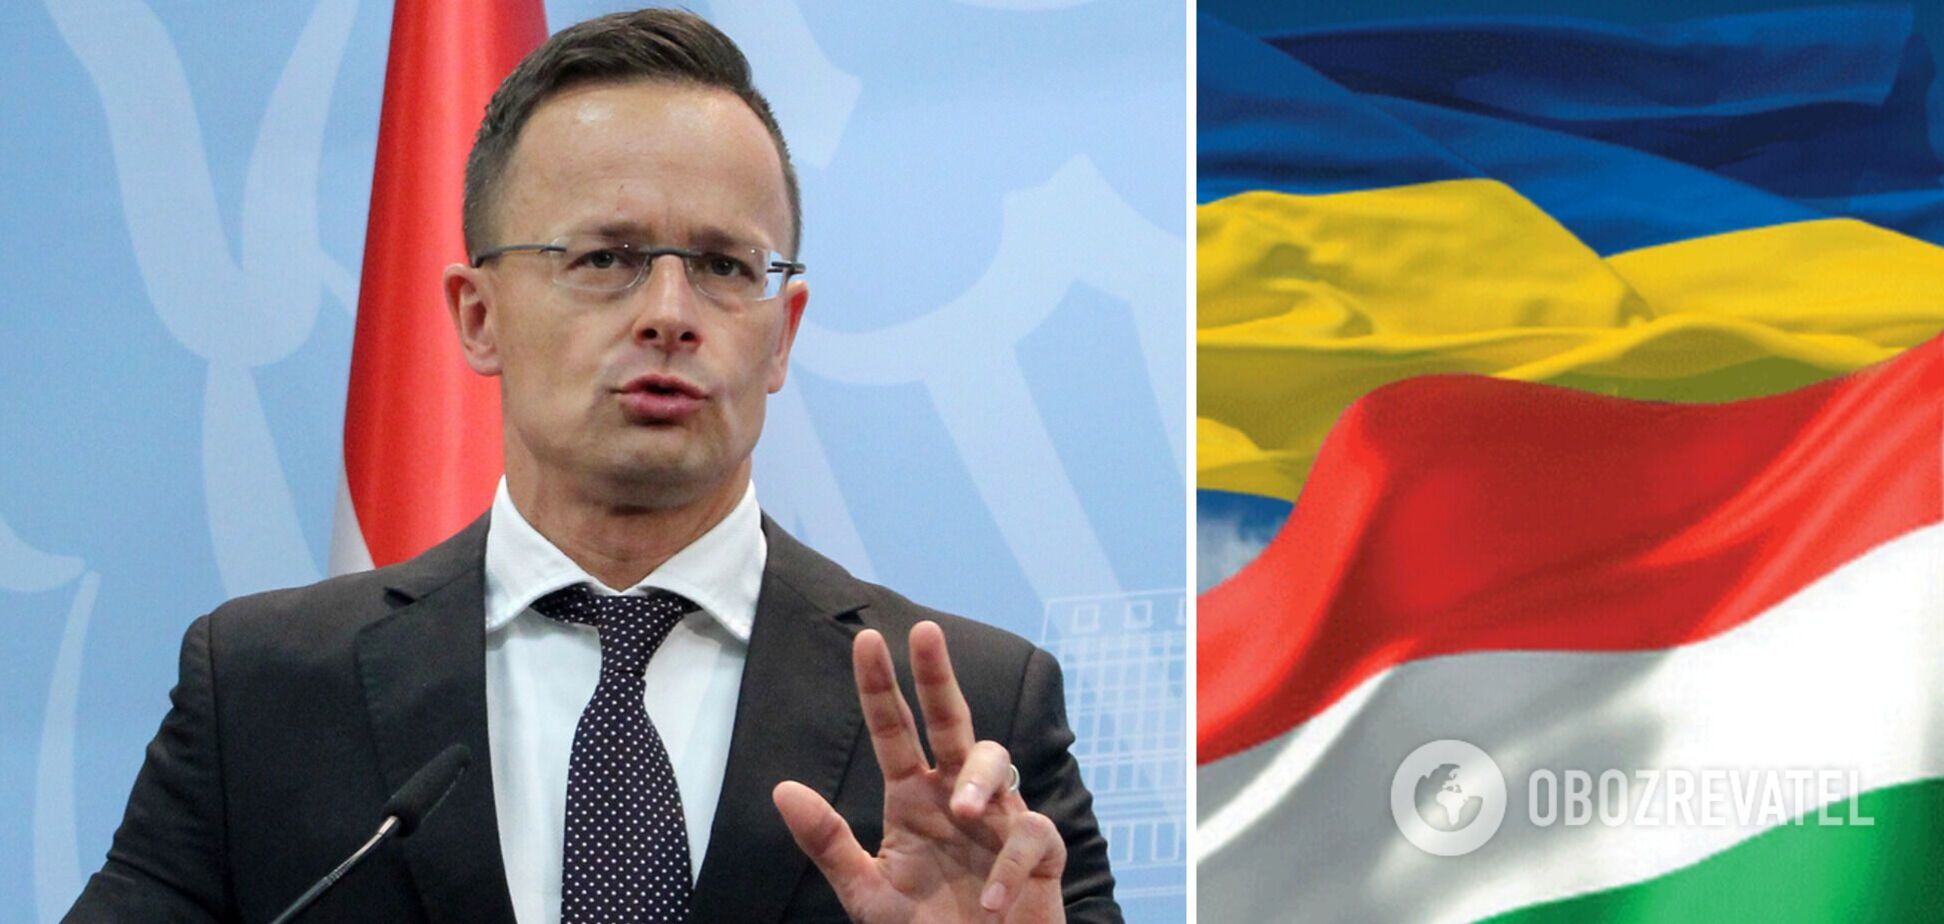 Сийярто заявил, что Венгрия не будет вмешиваться в войну в Украине